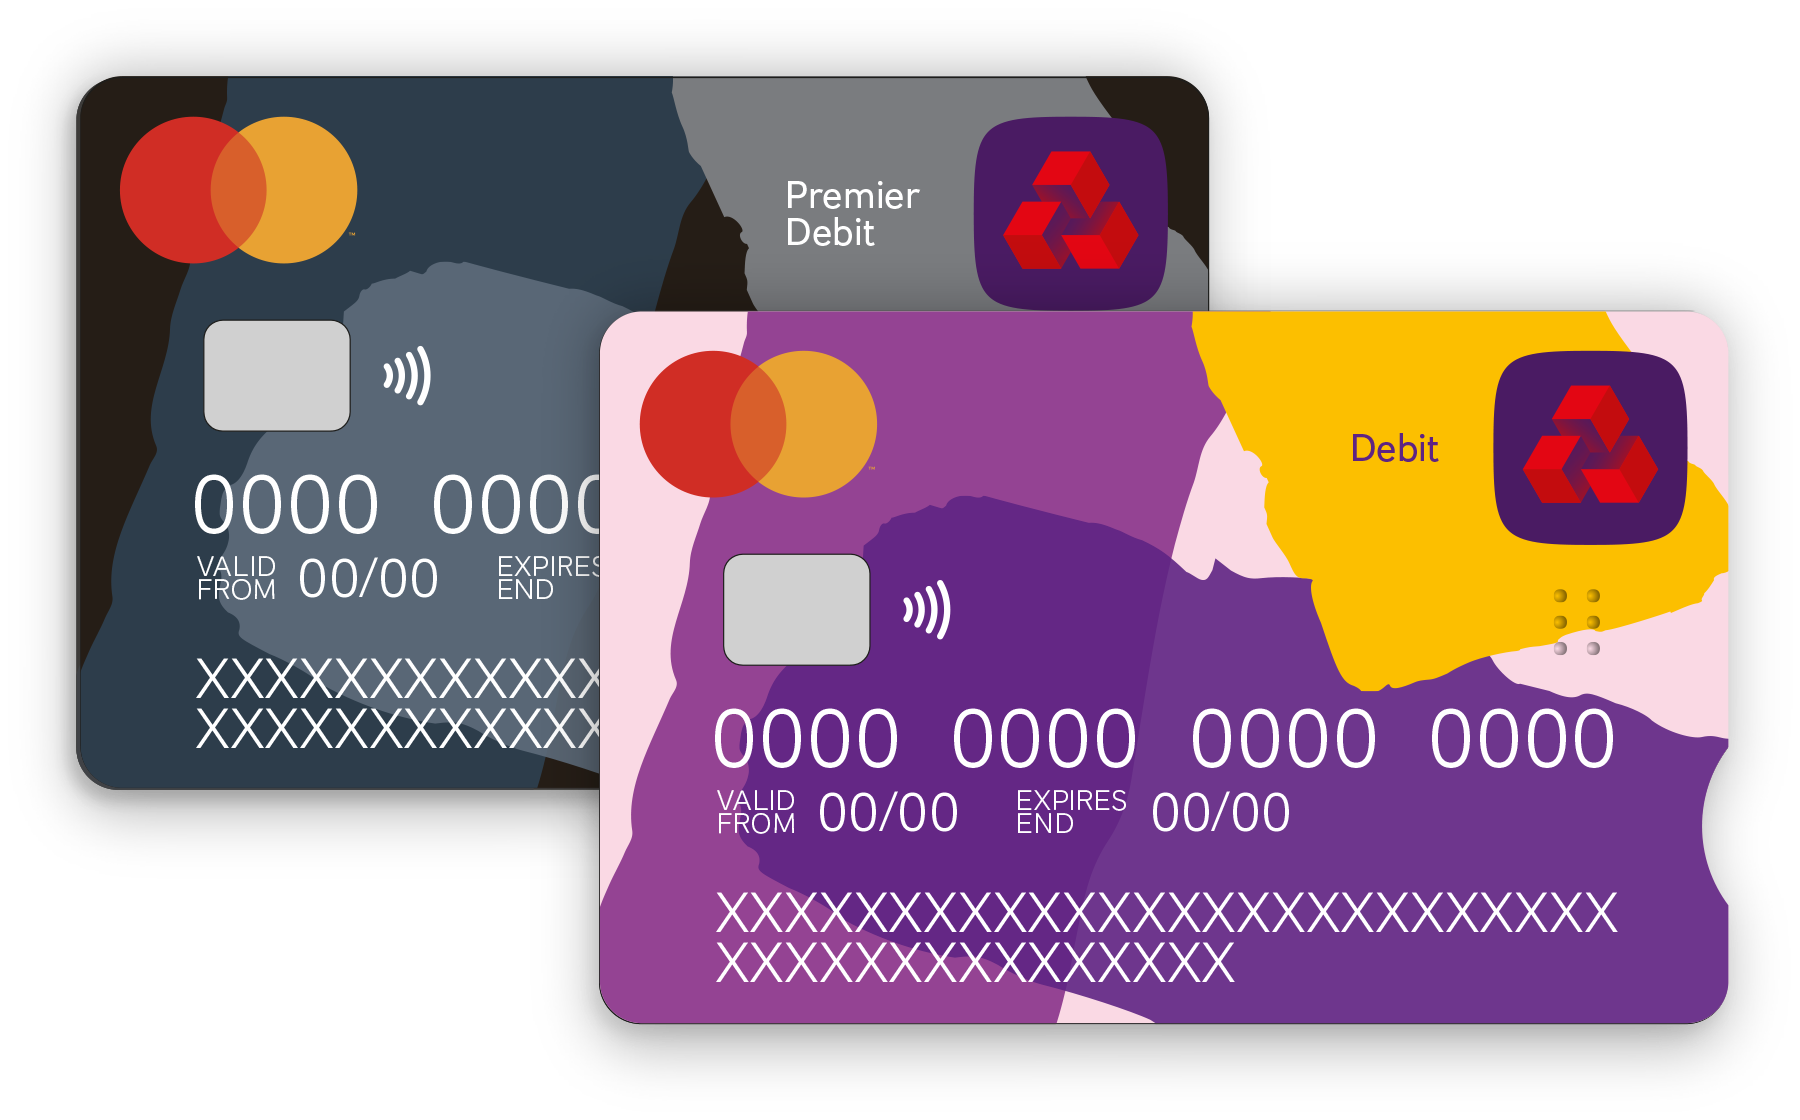 New NatWest debit cards